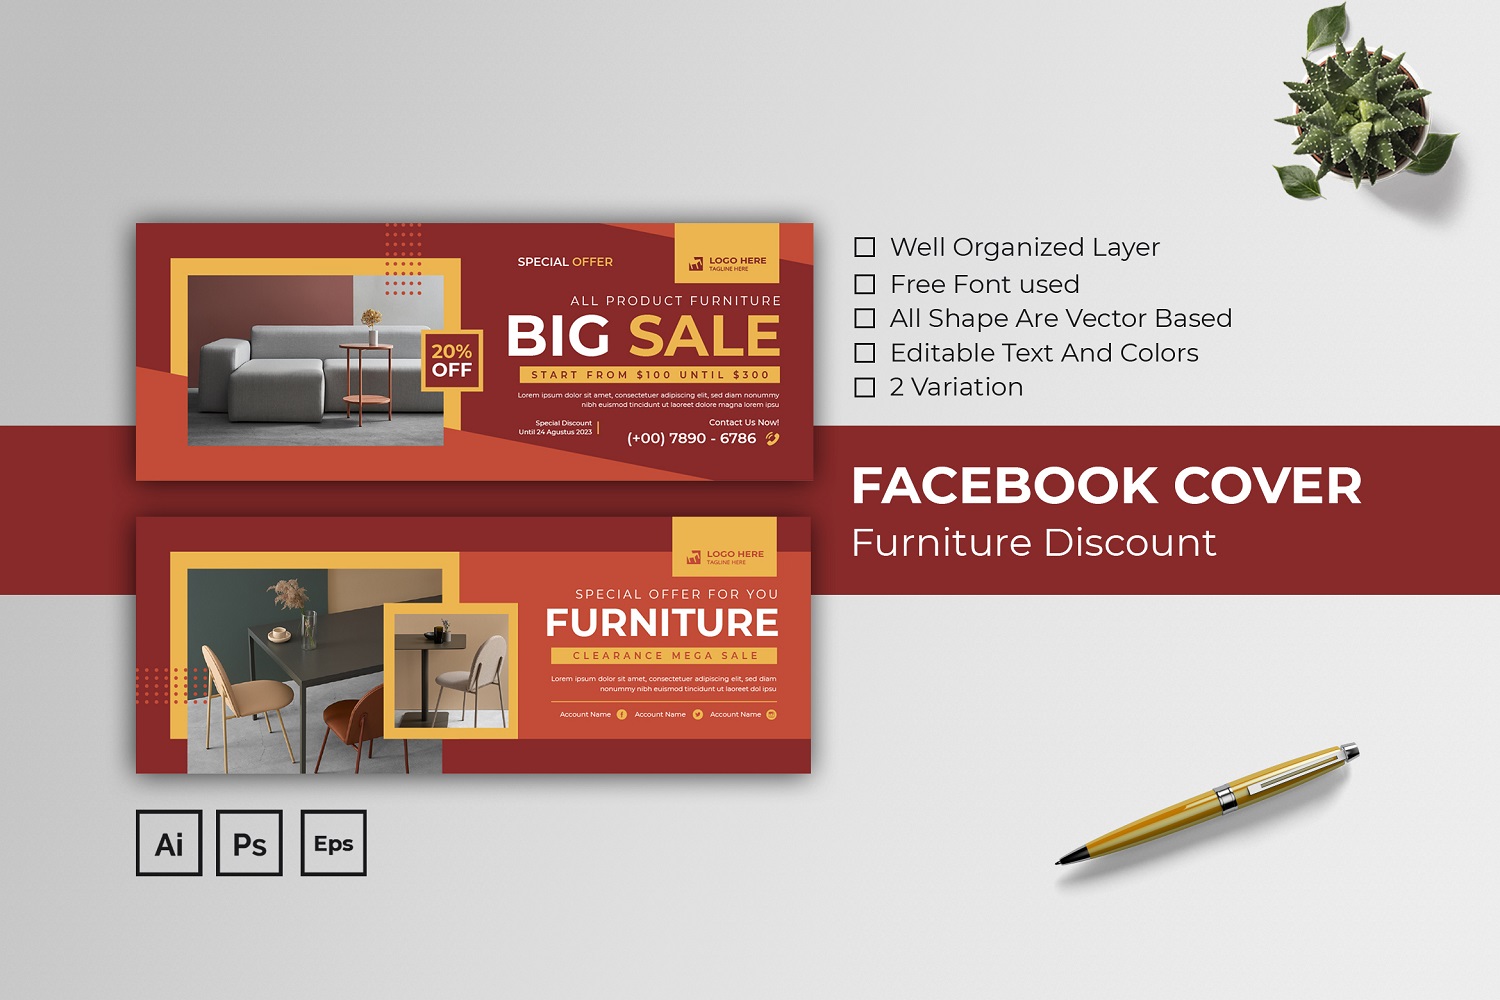 Furniture Discount Facebook Cover